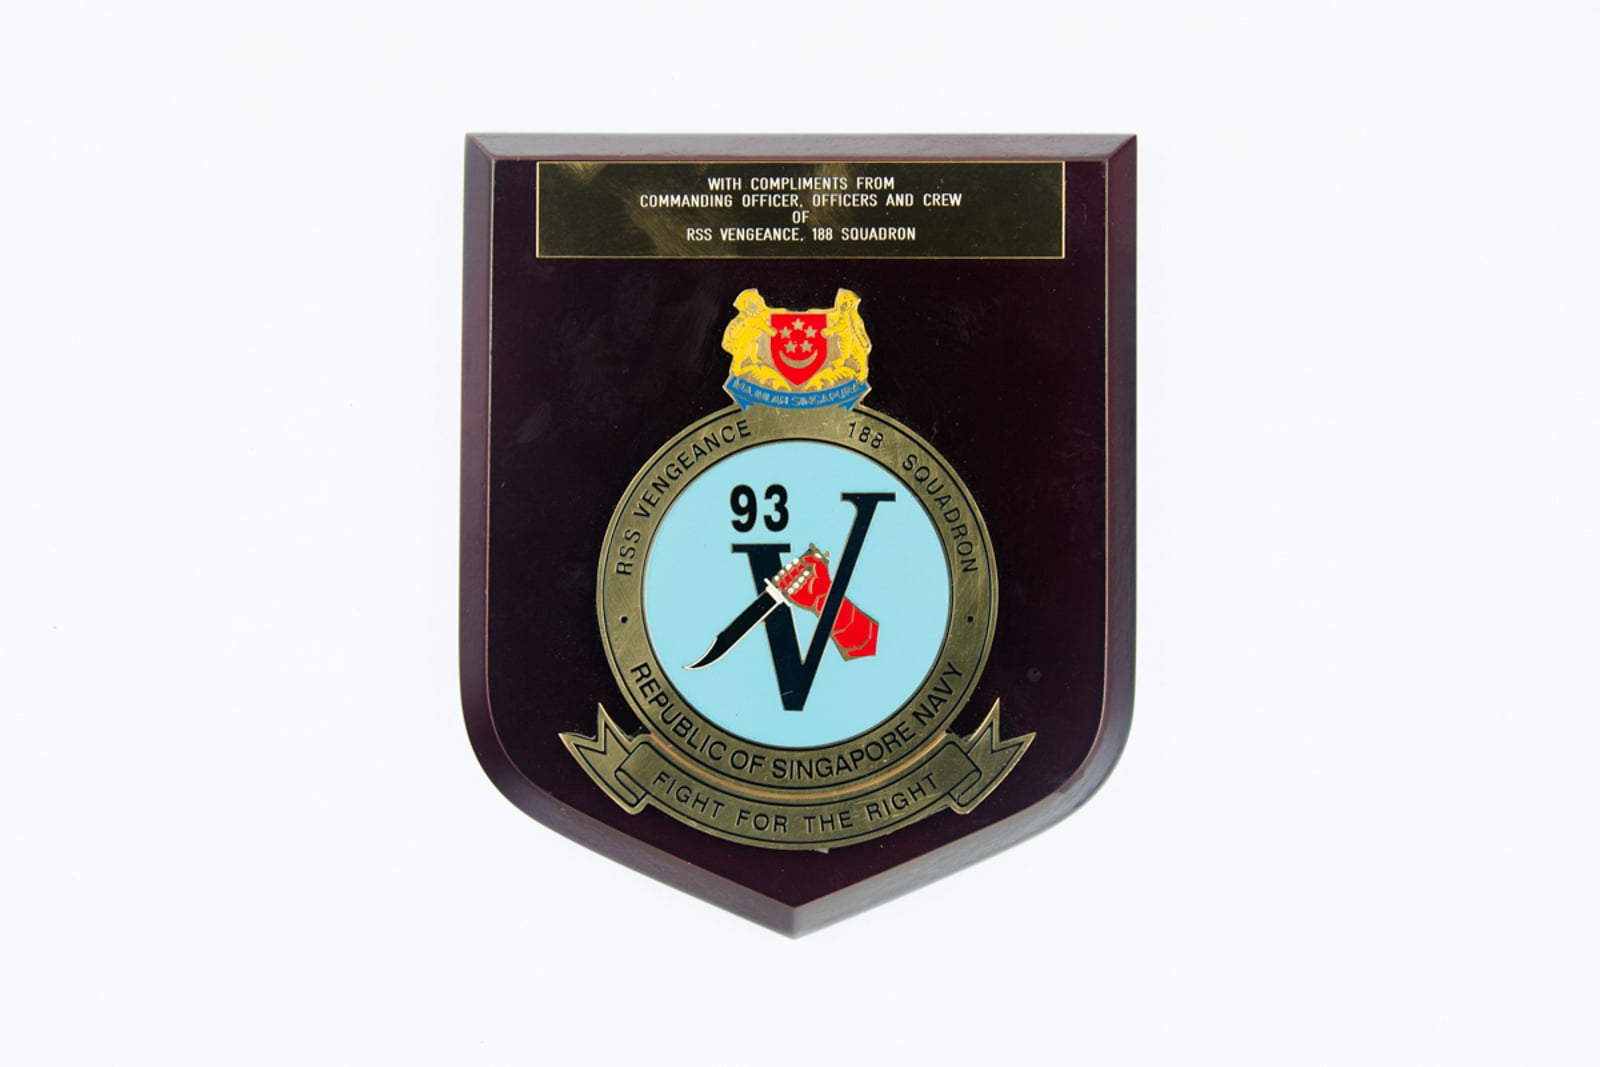 RSS Vengence 188 Squadron Plaque